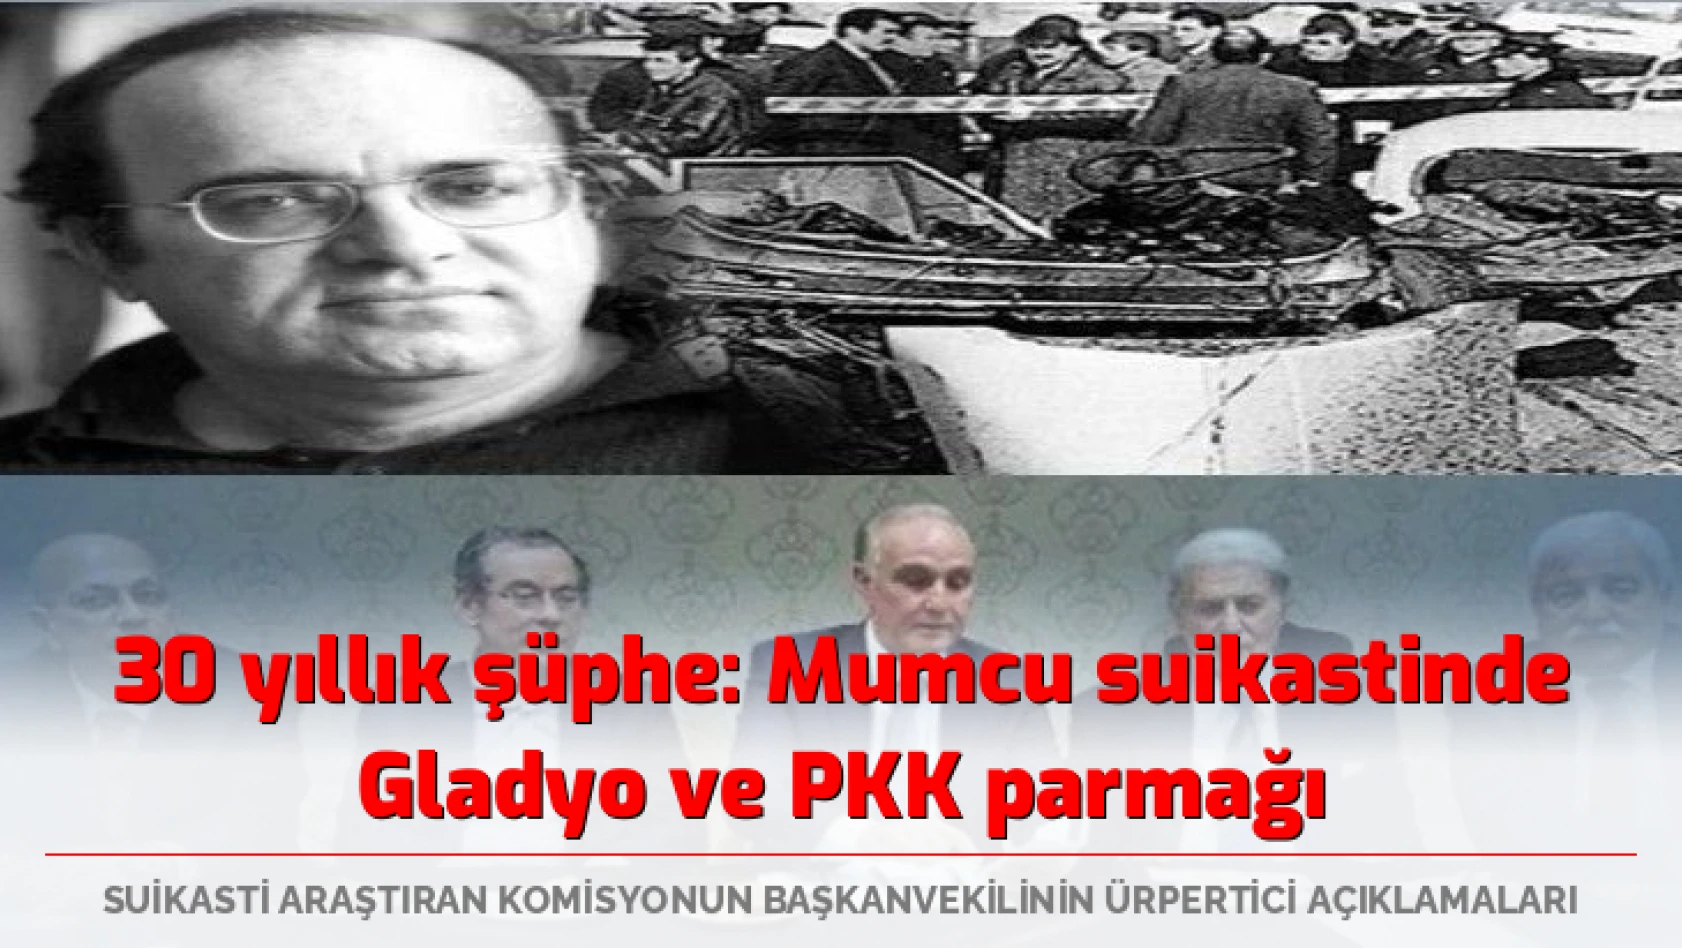 30 yıllık soru: Mumcu suikastinde Gladyo ve PKK parmağı mı?